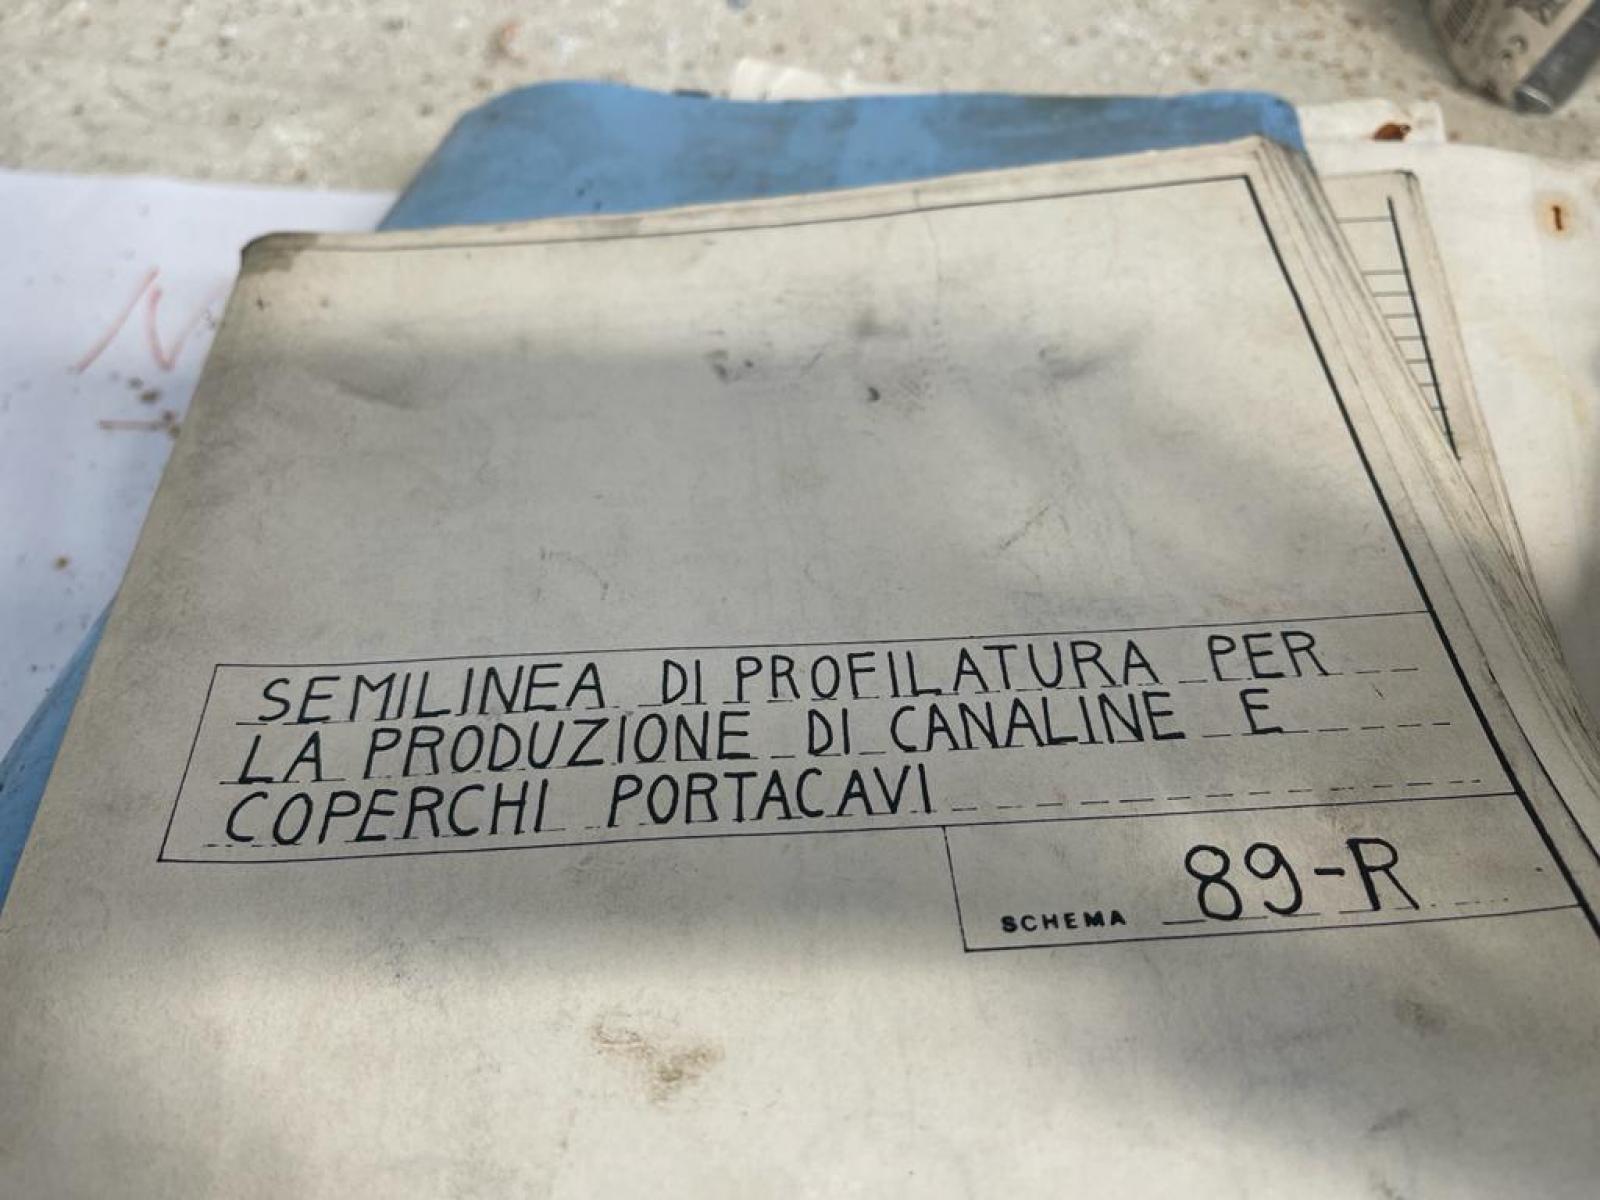 Profilatrice Gasparini PER LA PRODUZIONE DI CANALINE E COPERCHI PORTACAVI